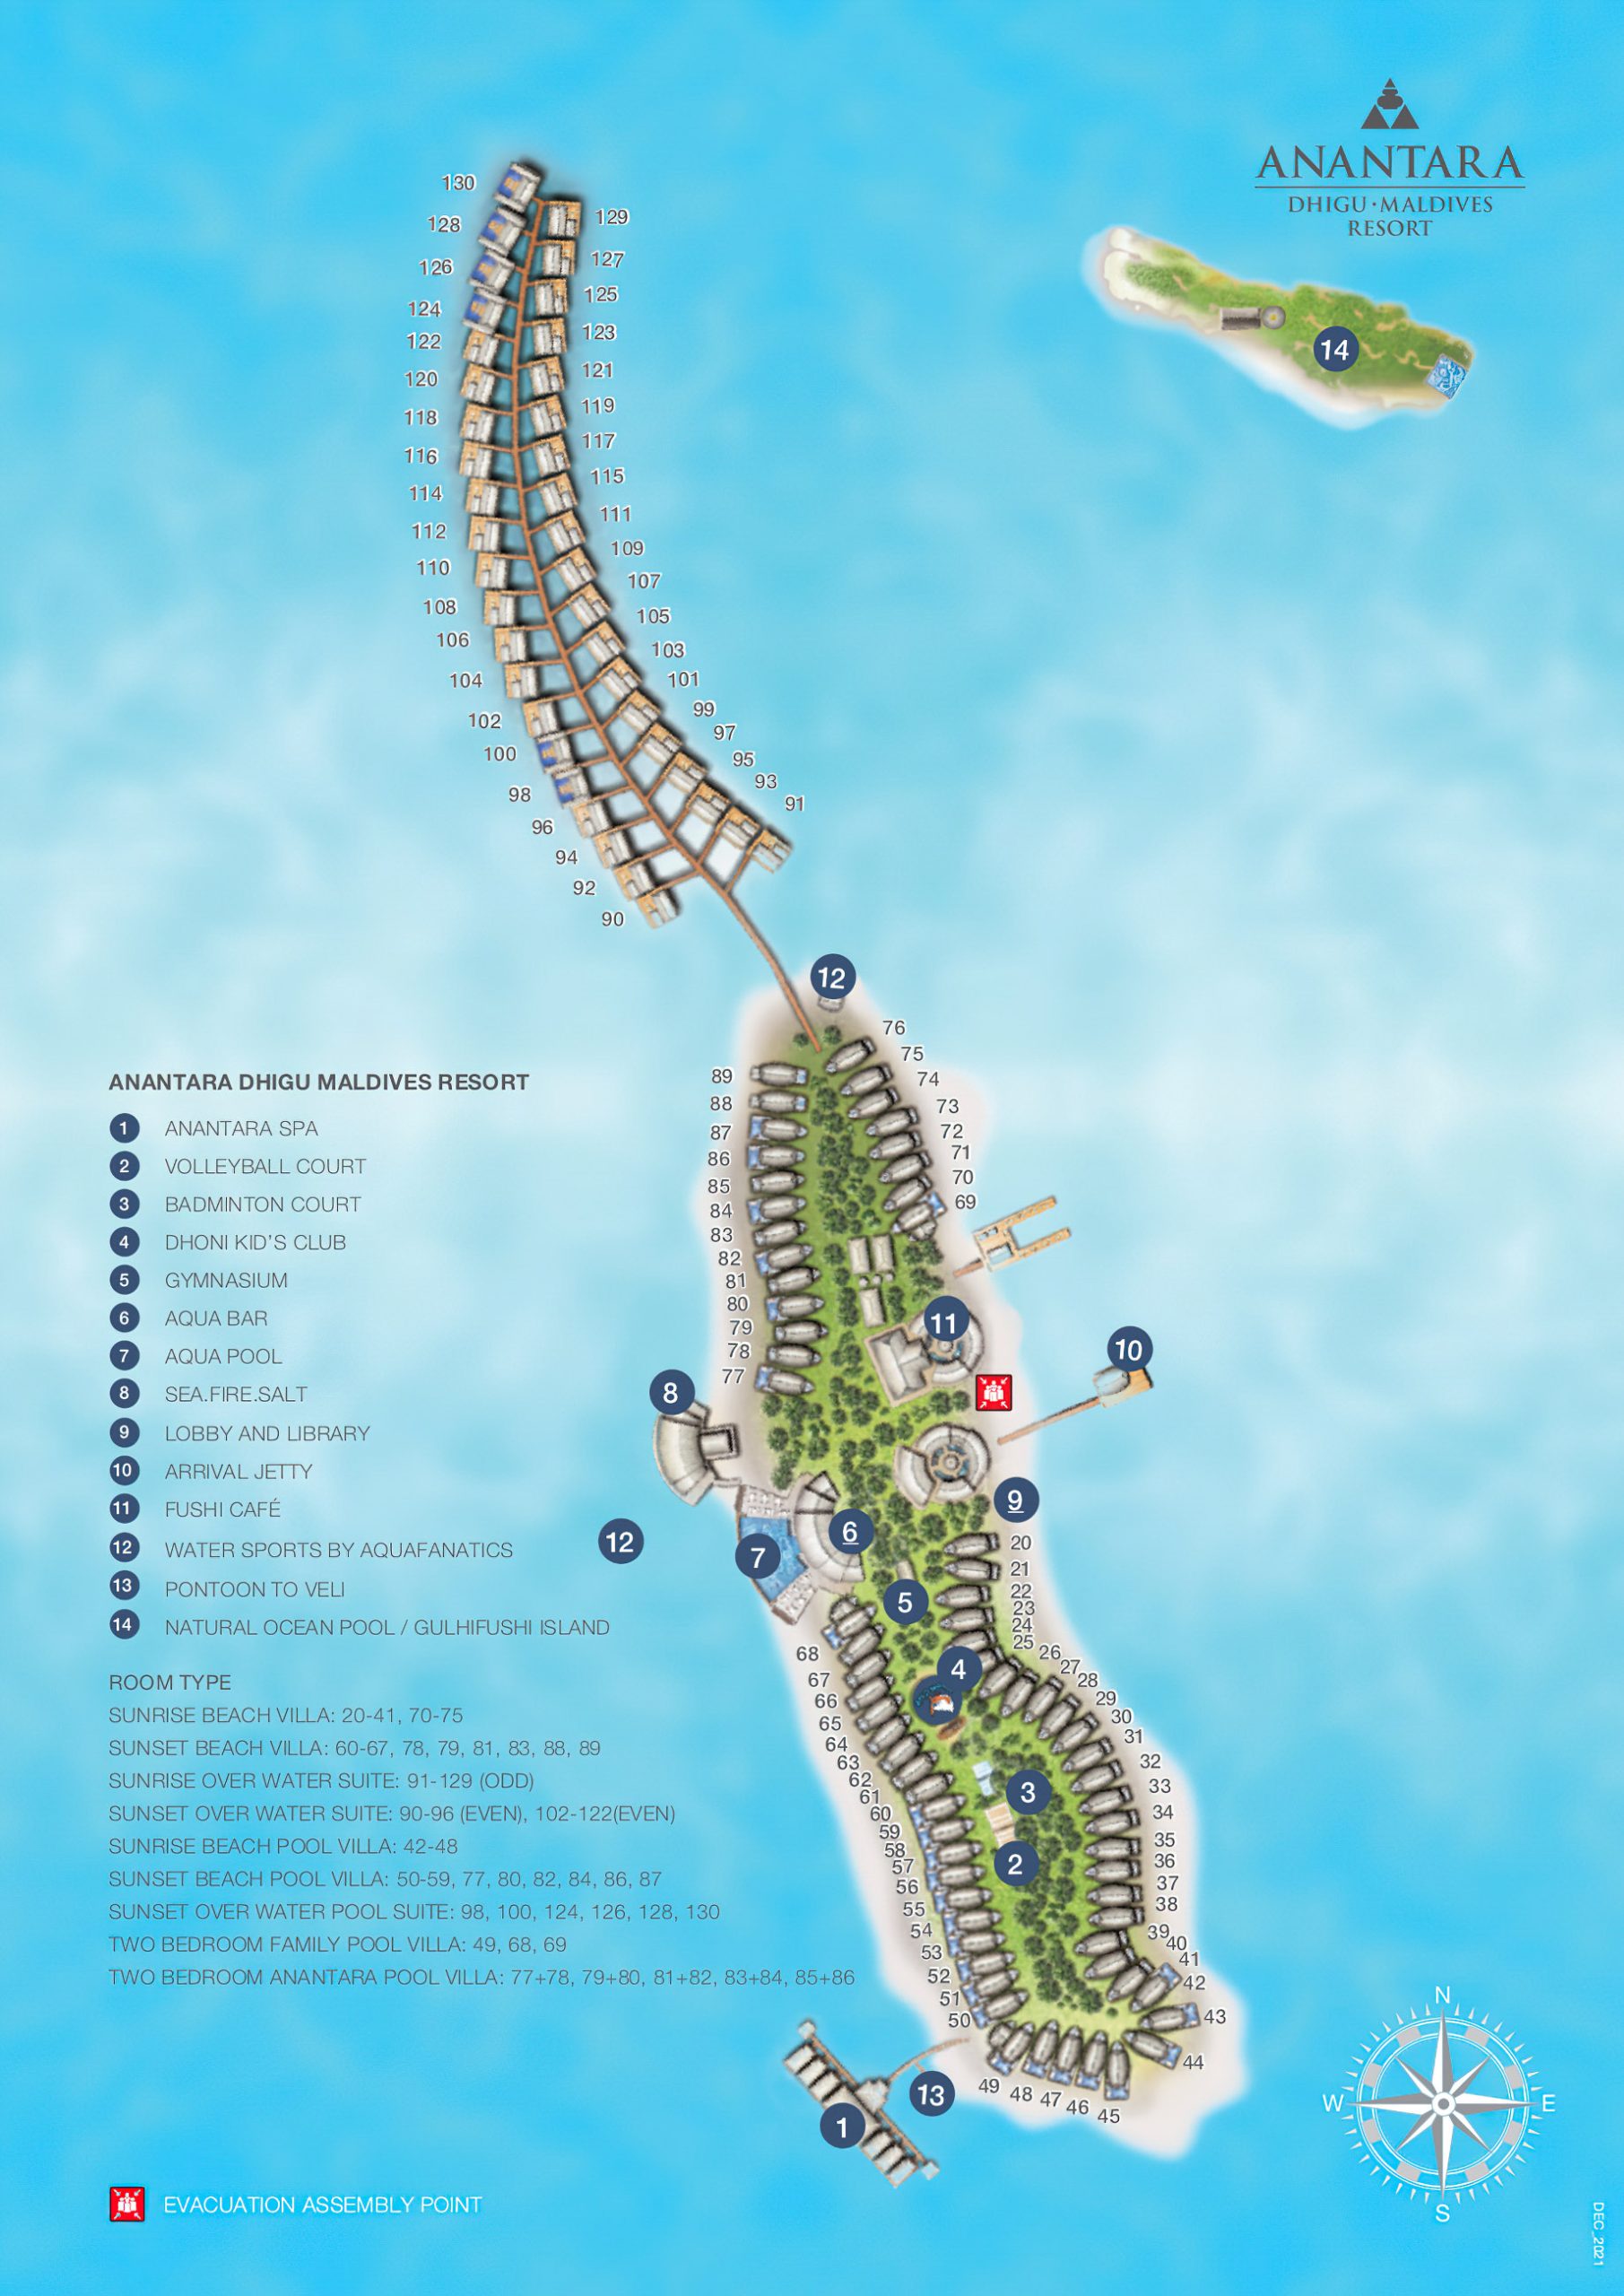 Anantara Thigu Maldives Resort – South Male Atoll, Maldives – Map